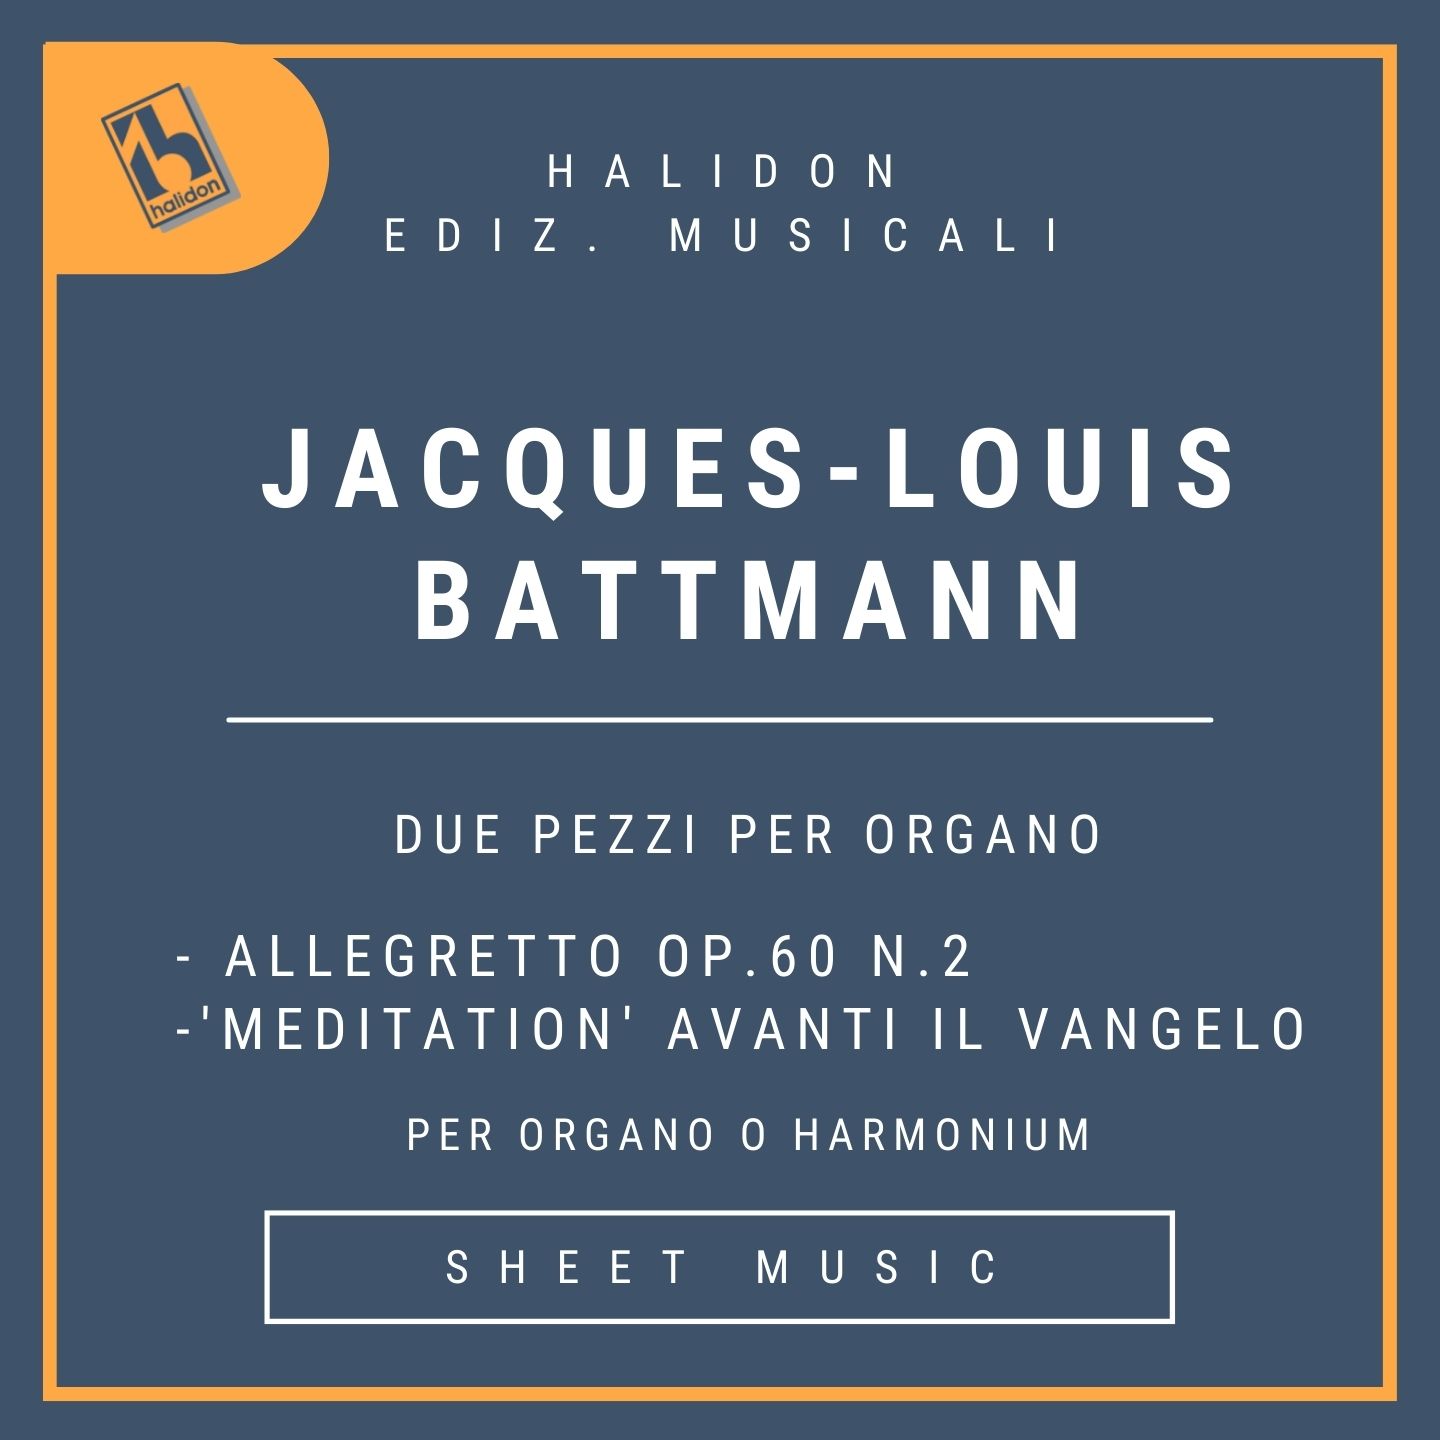 Jacques-Louis Battmann - Due pezzi per organo